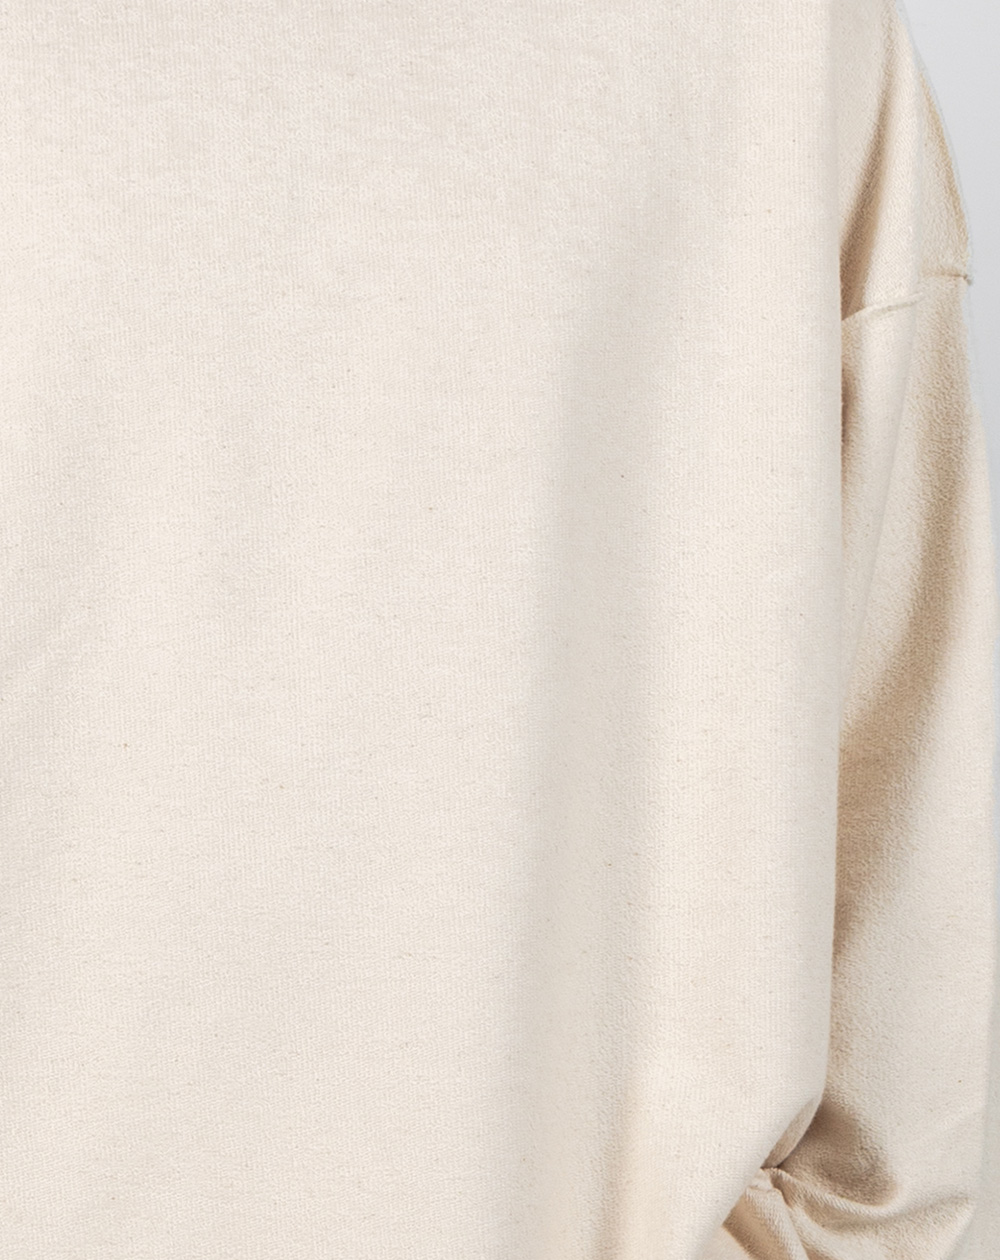 ANTS. SAKE sweatshirt in off white, close up